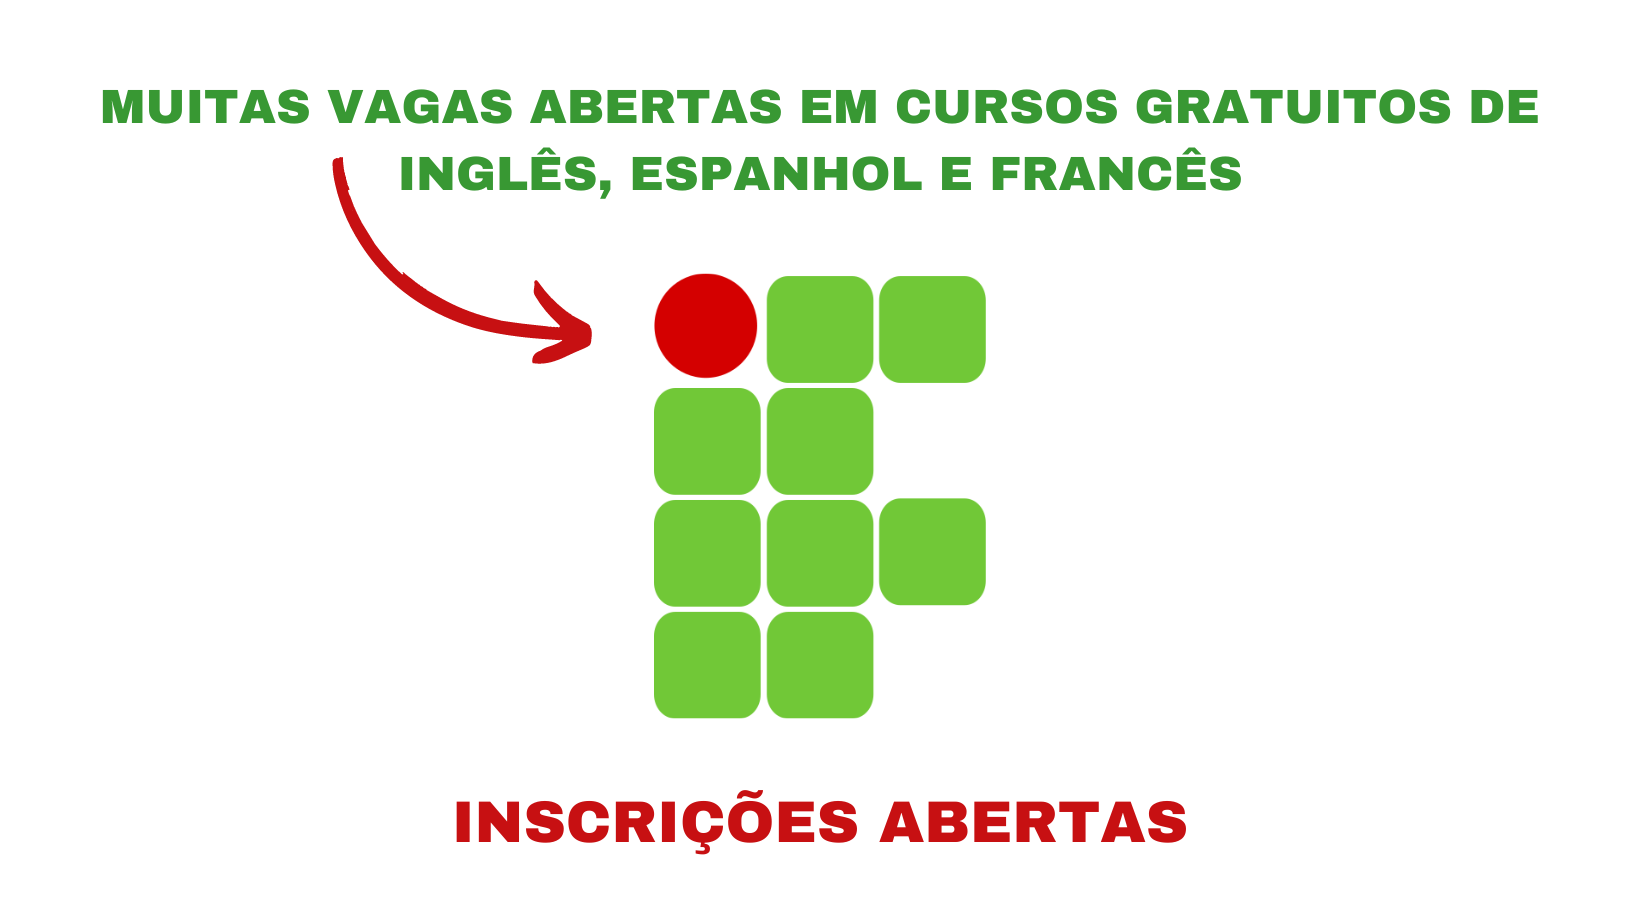 Os cursos gratuitos de idiomas do Instituto Federal podem ser realizados por todos os brasileiros com acesso à internet. Não perca a chance de aprender inglês, espanhol ou francês no conforto de sua casa!